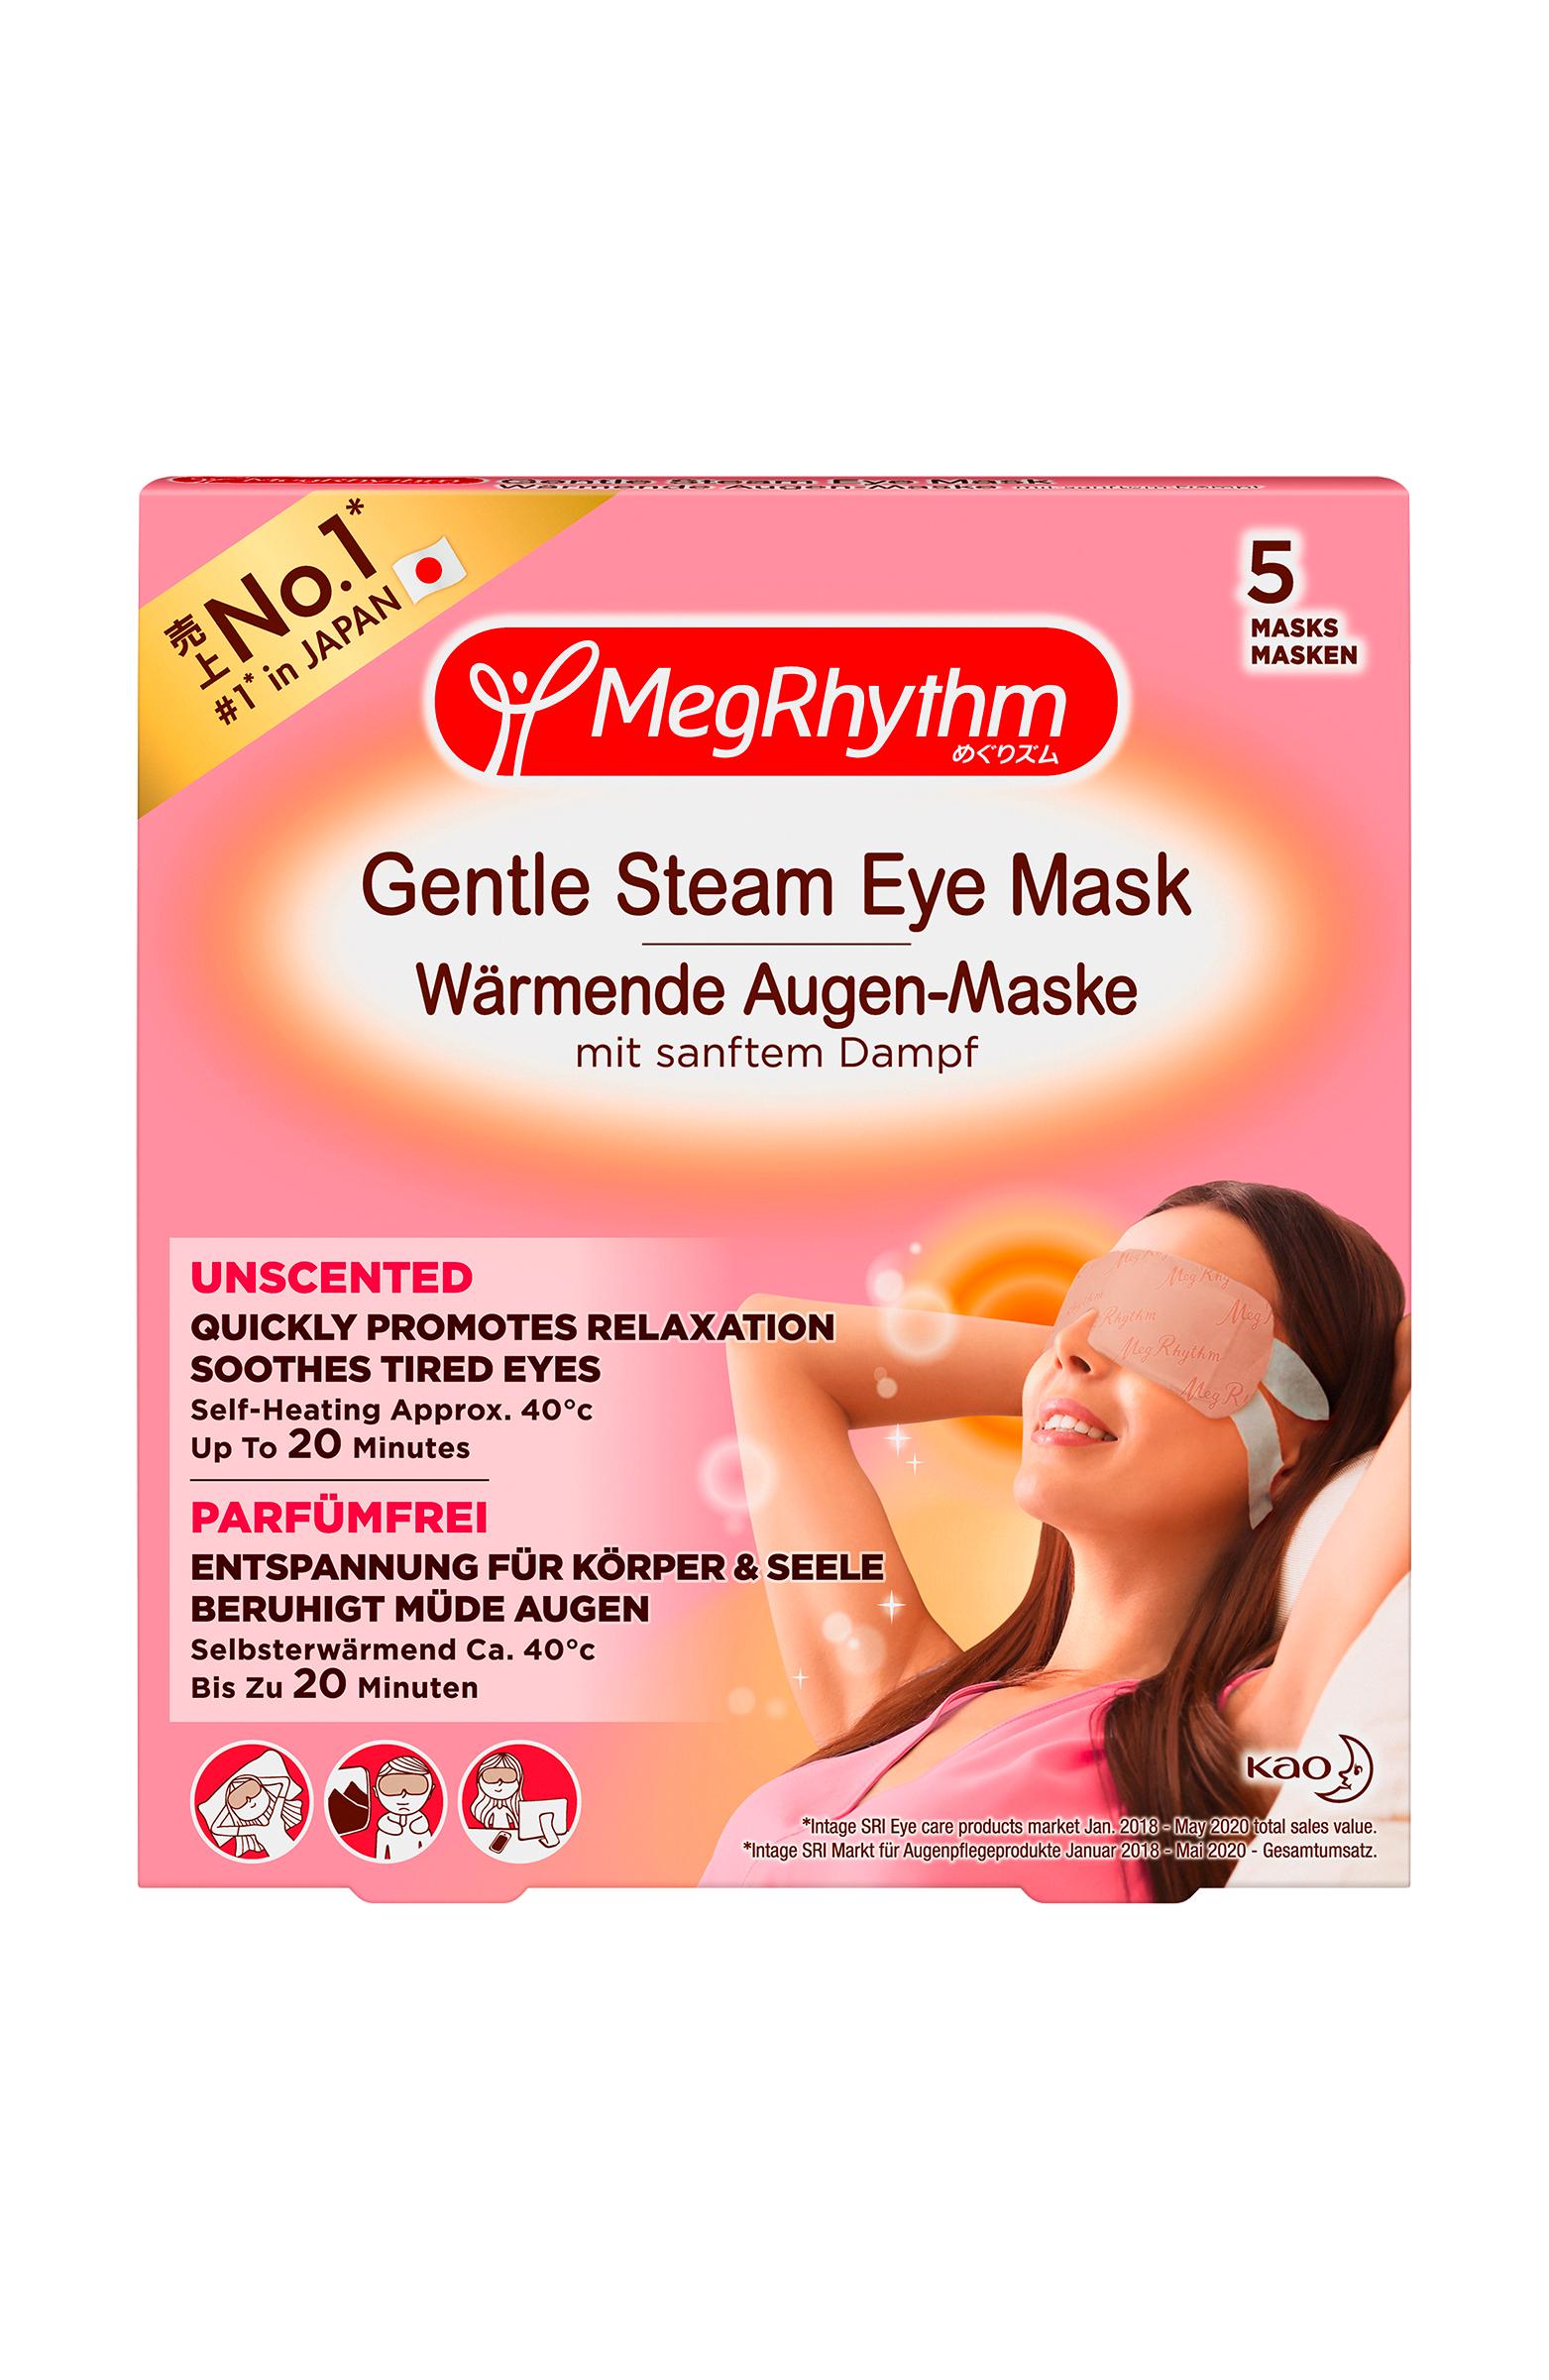 MegRhythm - Wärmende Augen-Masken Parfumfrei